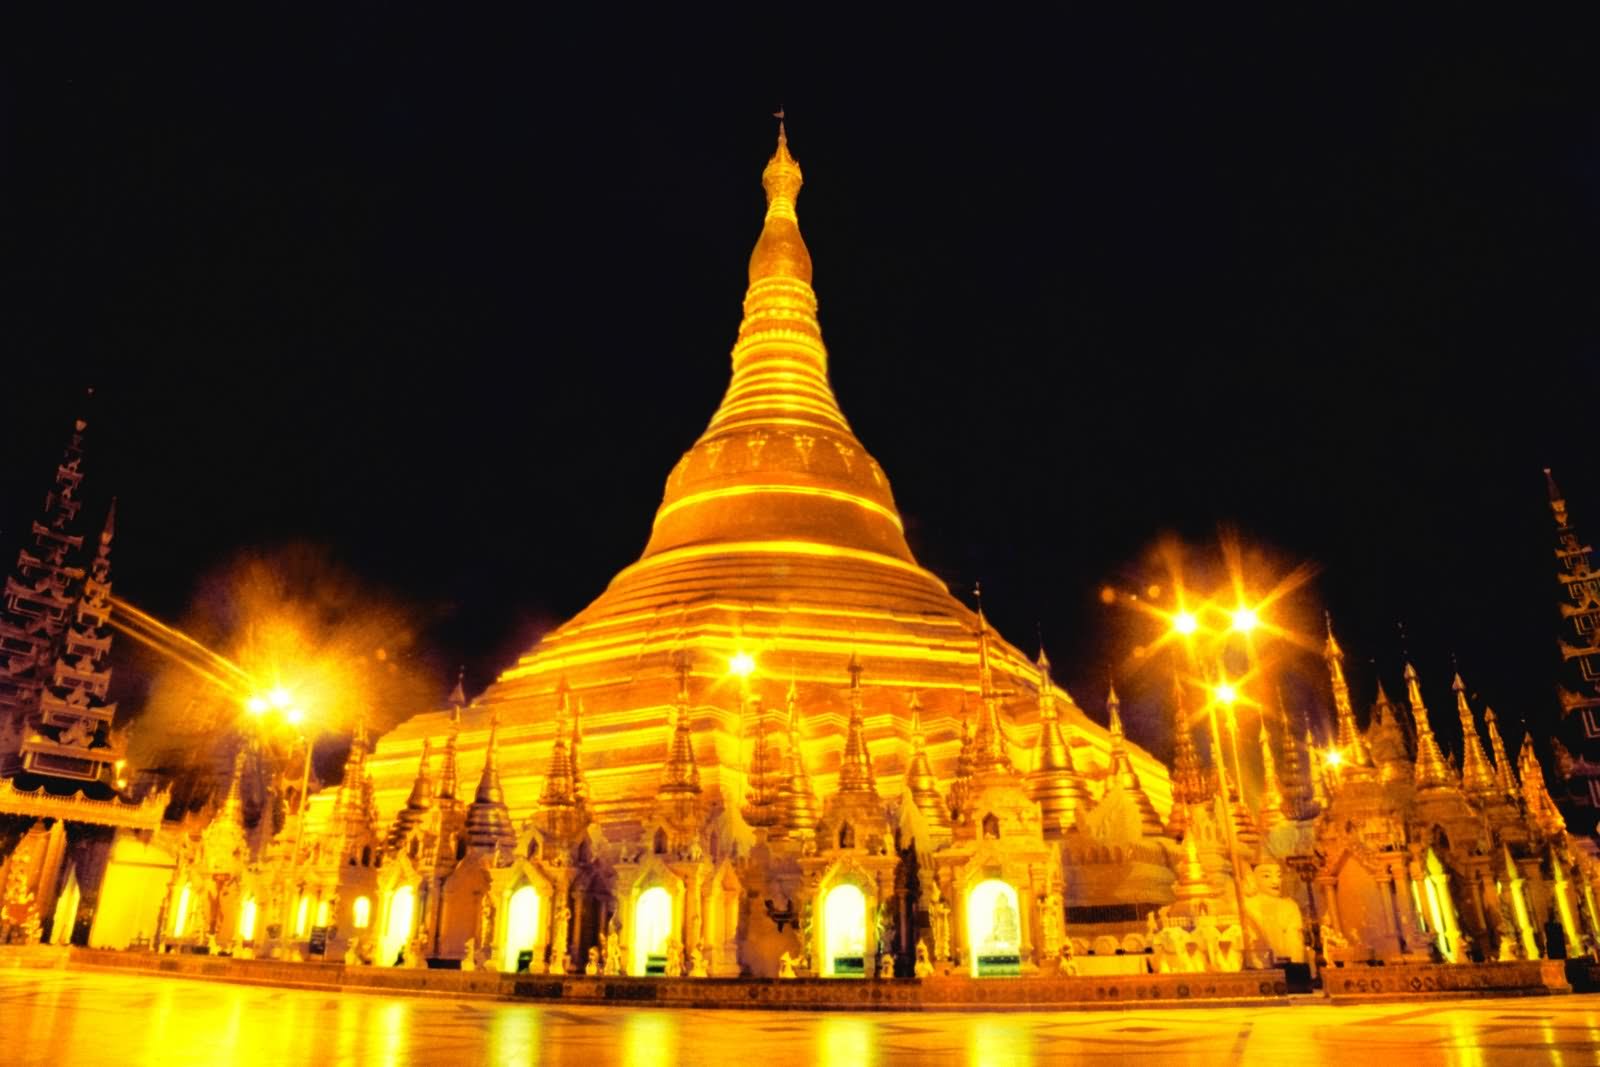 Adorable Night View Of The Shwedagon Pagoda, Myanmar